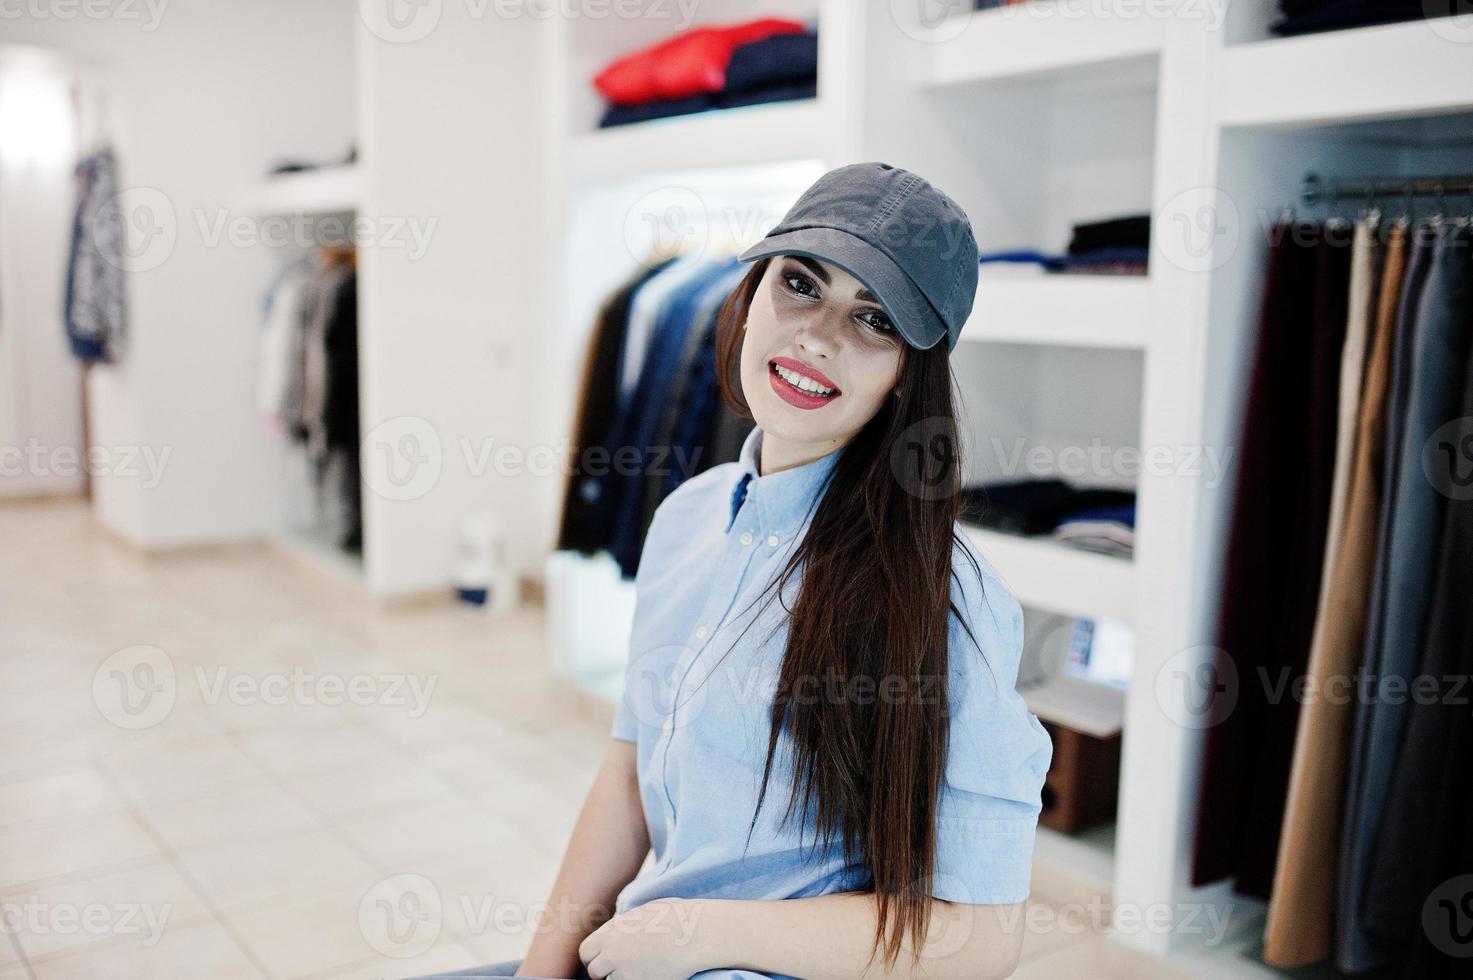 bruna splendida ragazza nella boutique del negozio di abbigliamento in abiti casual e berretto. foto